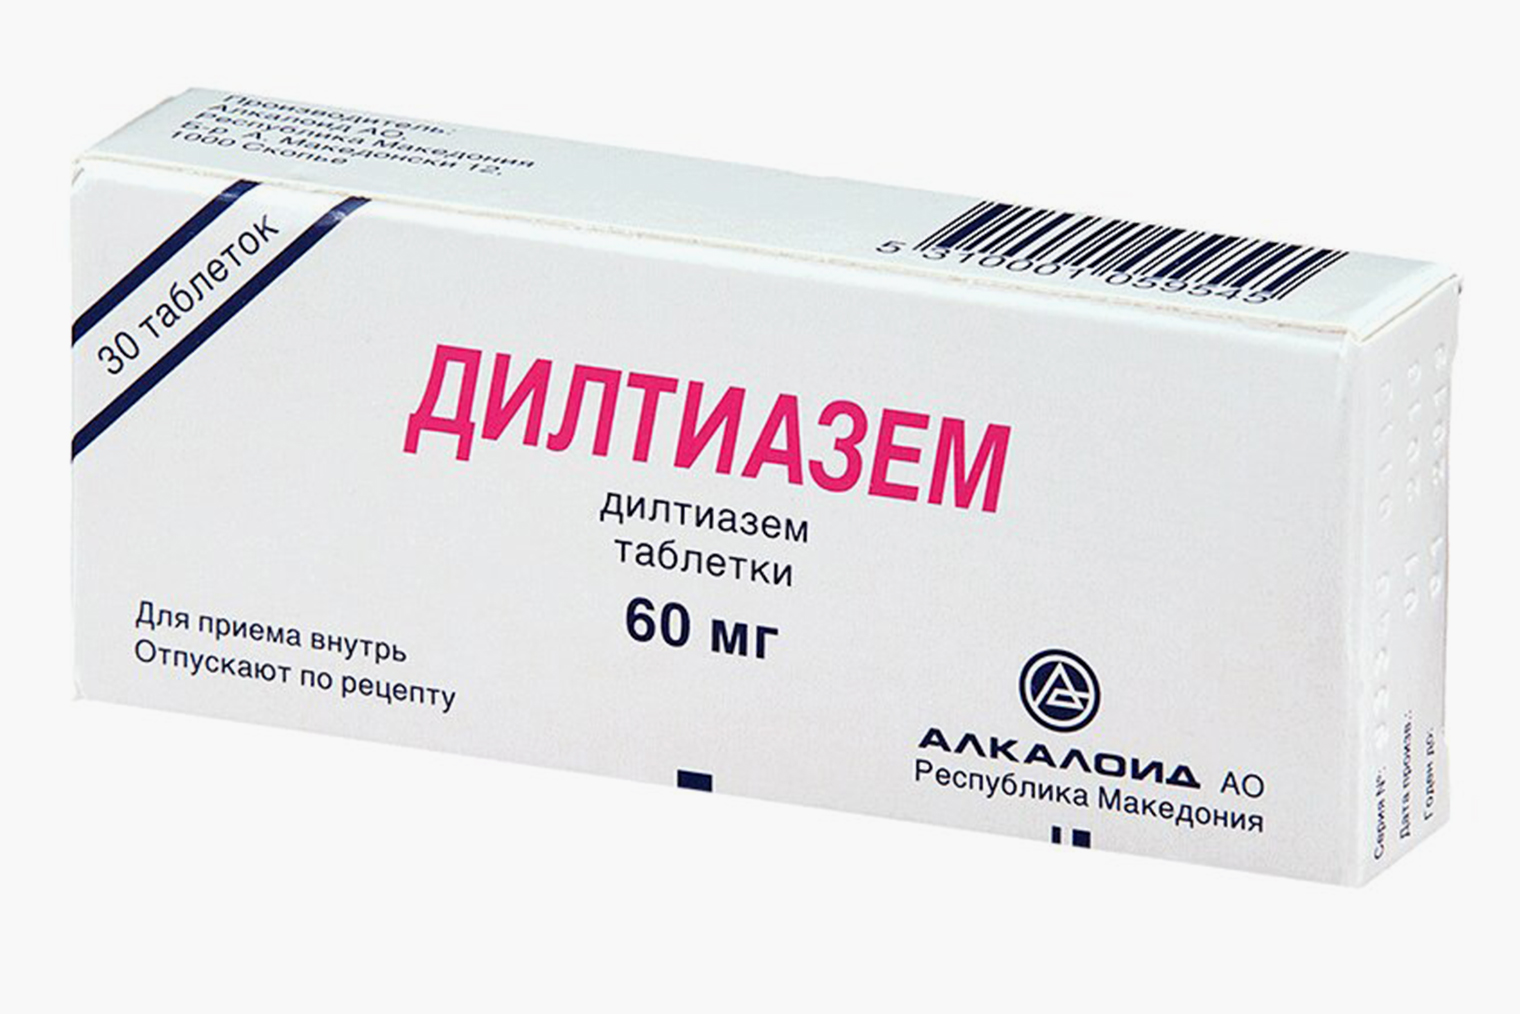 Стоимость 30 таблеток дилтиазема в дозировке 80 мг начинается от 65 ₽